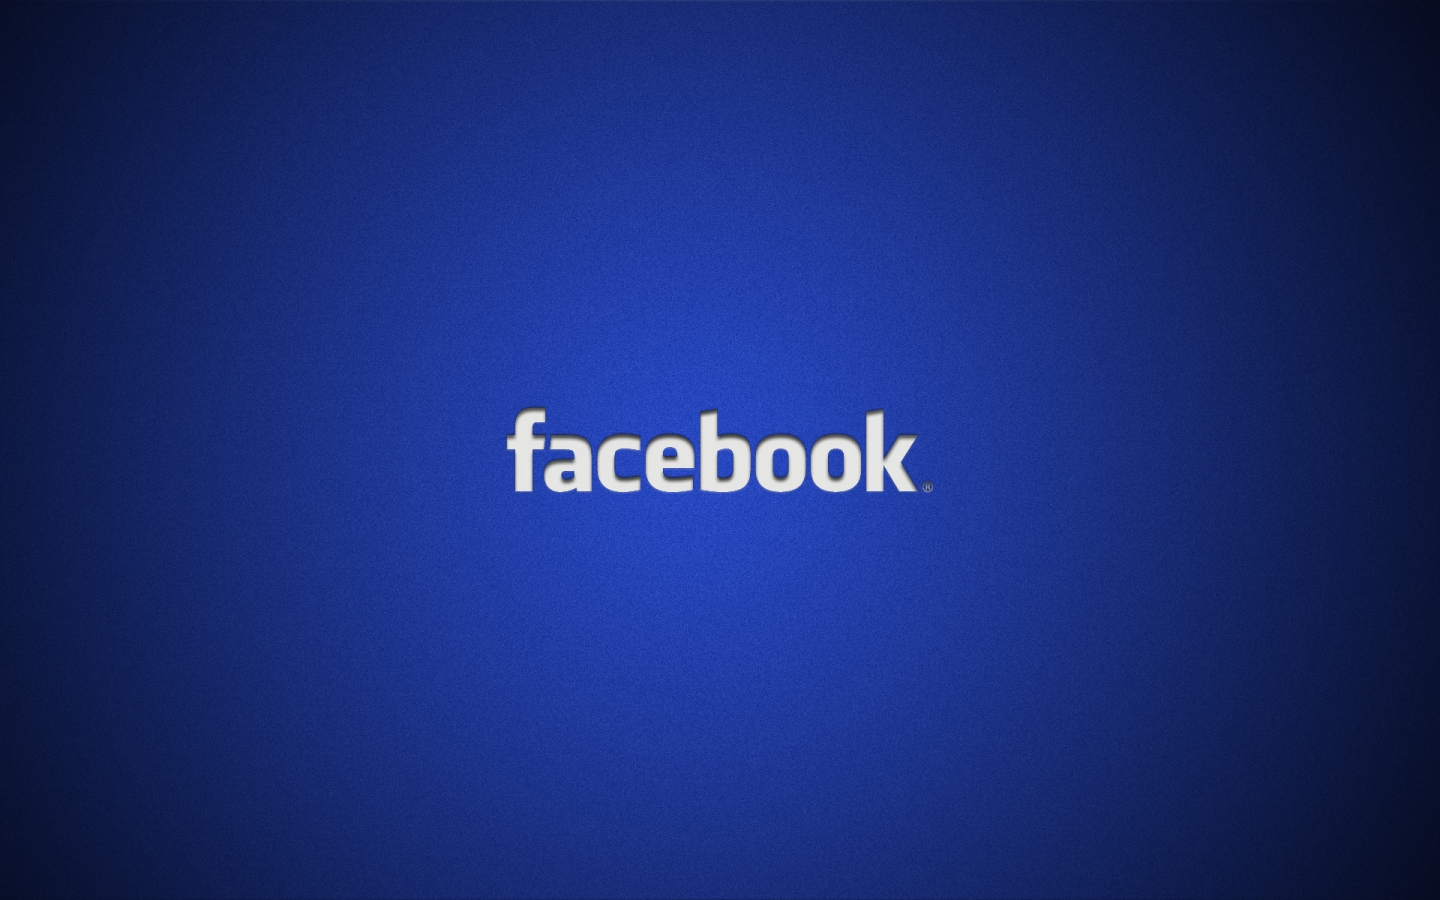 Facebook Logo for 1440 x 900 widescreen resolution